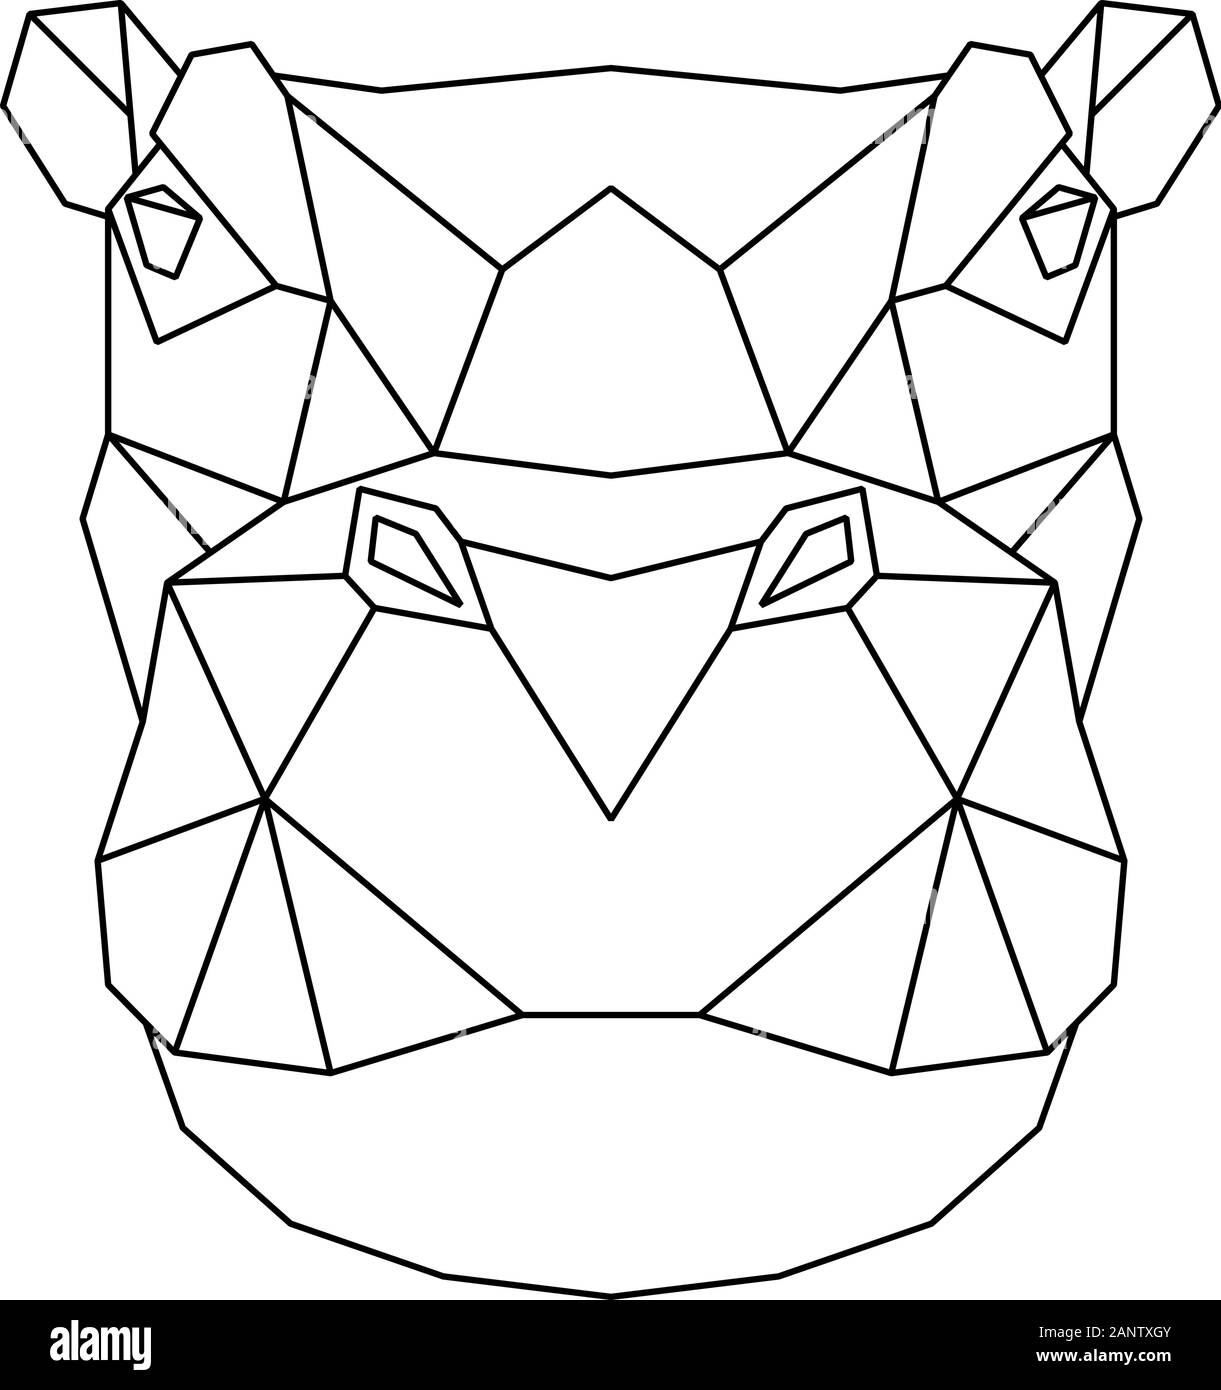 Résumé de la tête polygonale d'Hippone. Illustration vecteur géométrique d'hippopotame. Illustration de Vecteur